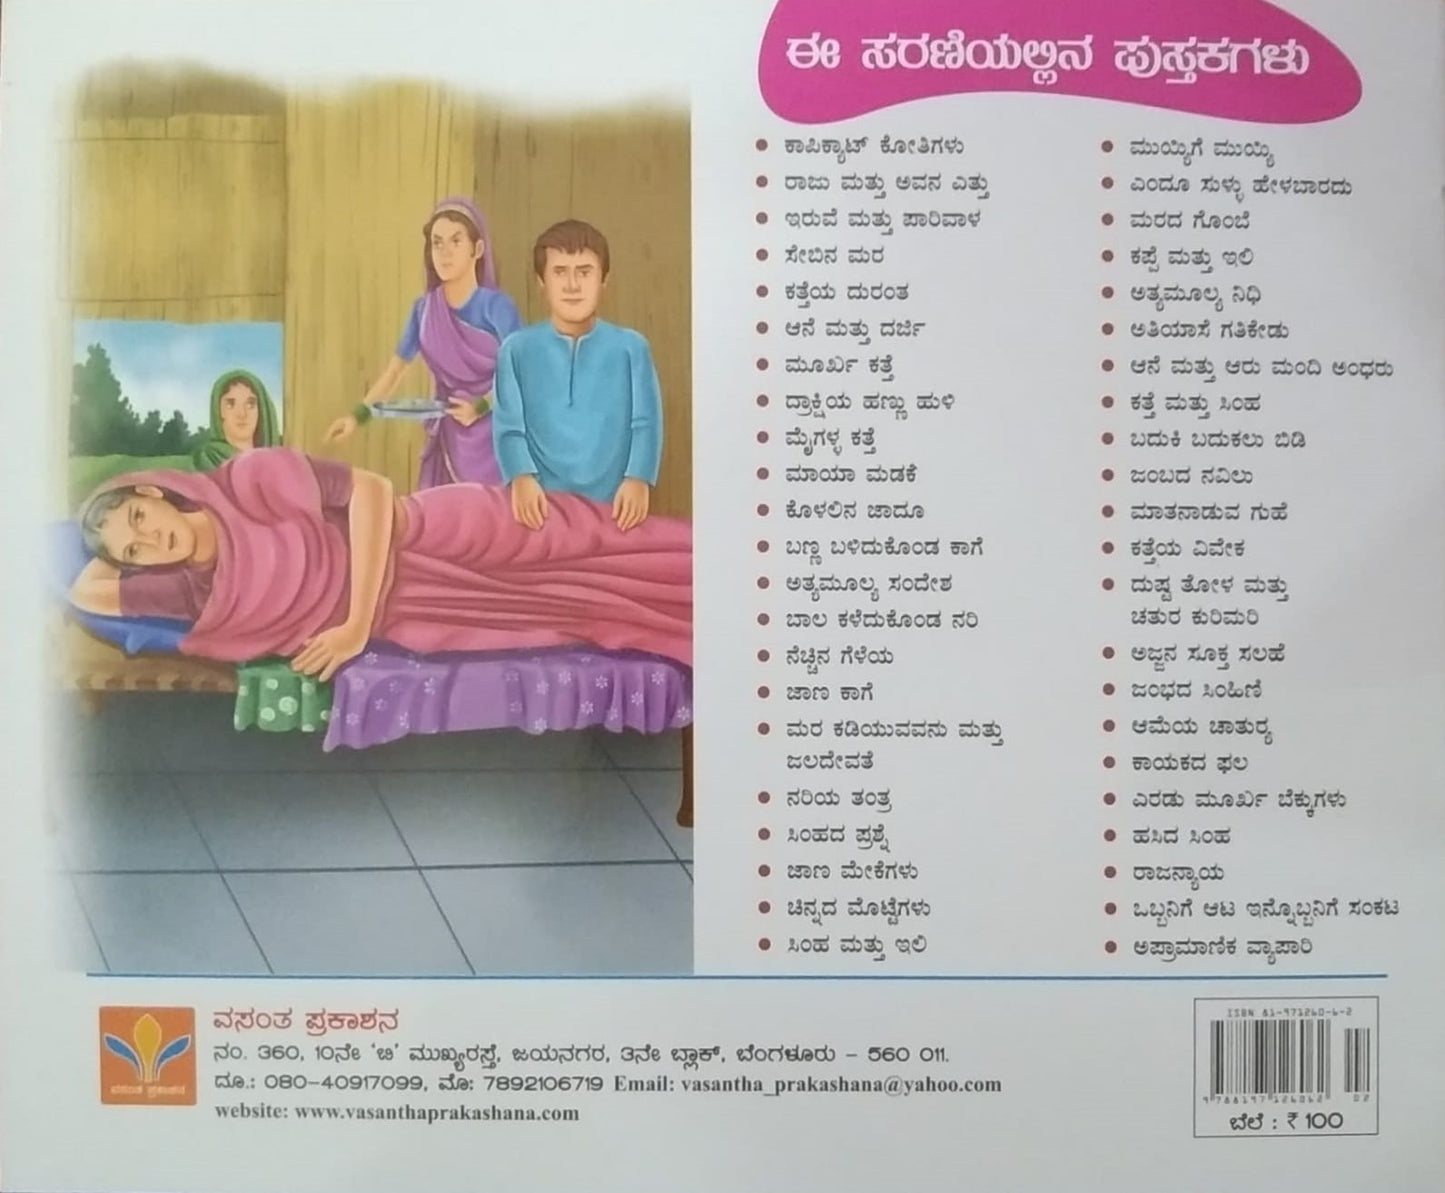 Dushta Tola Mattu Chatura Kurimari is Children's Stories Book, Edited by S. Pattabhirama, Published by Vasantha Prakashana